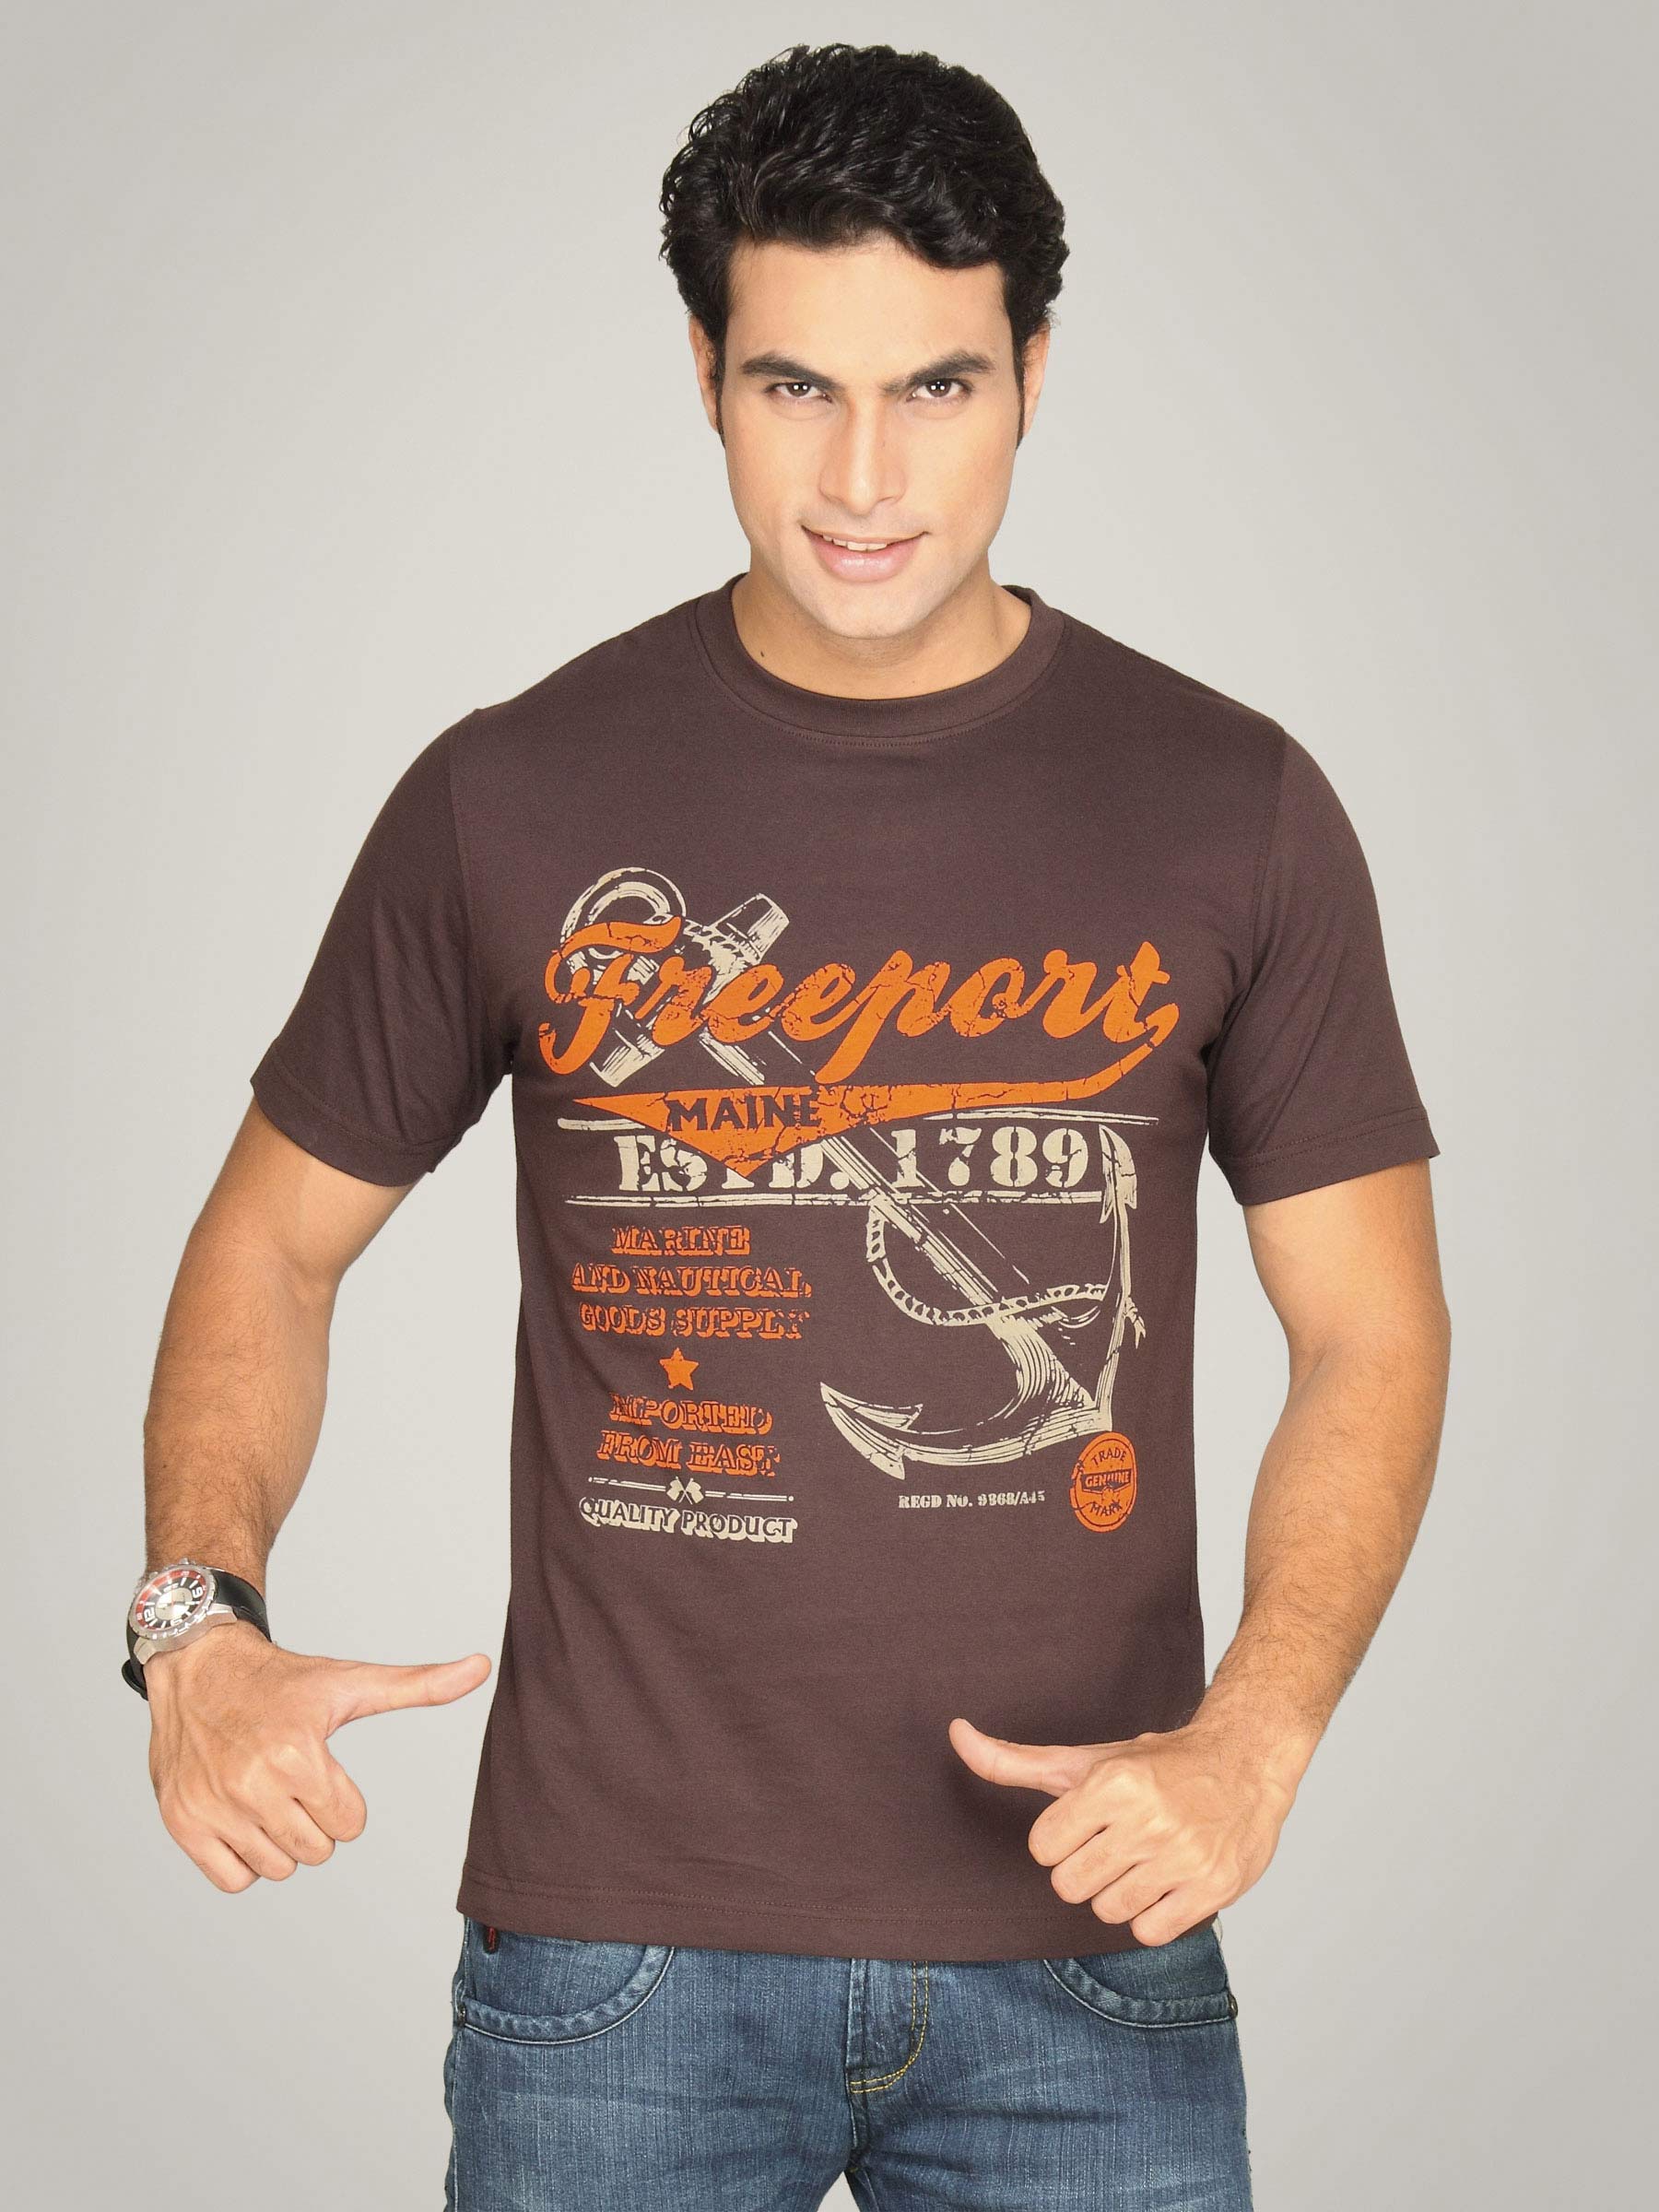 Locomotive Men's Round Neck Brown T-shirt